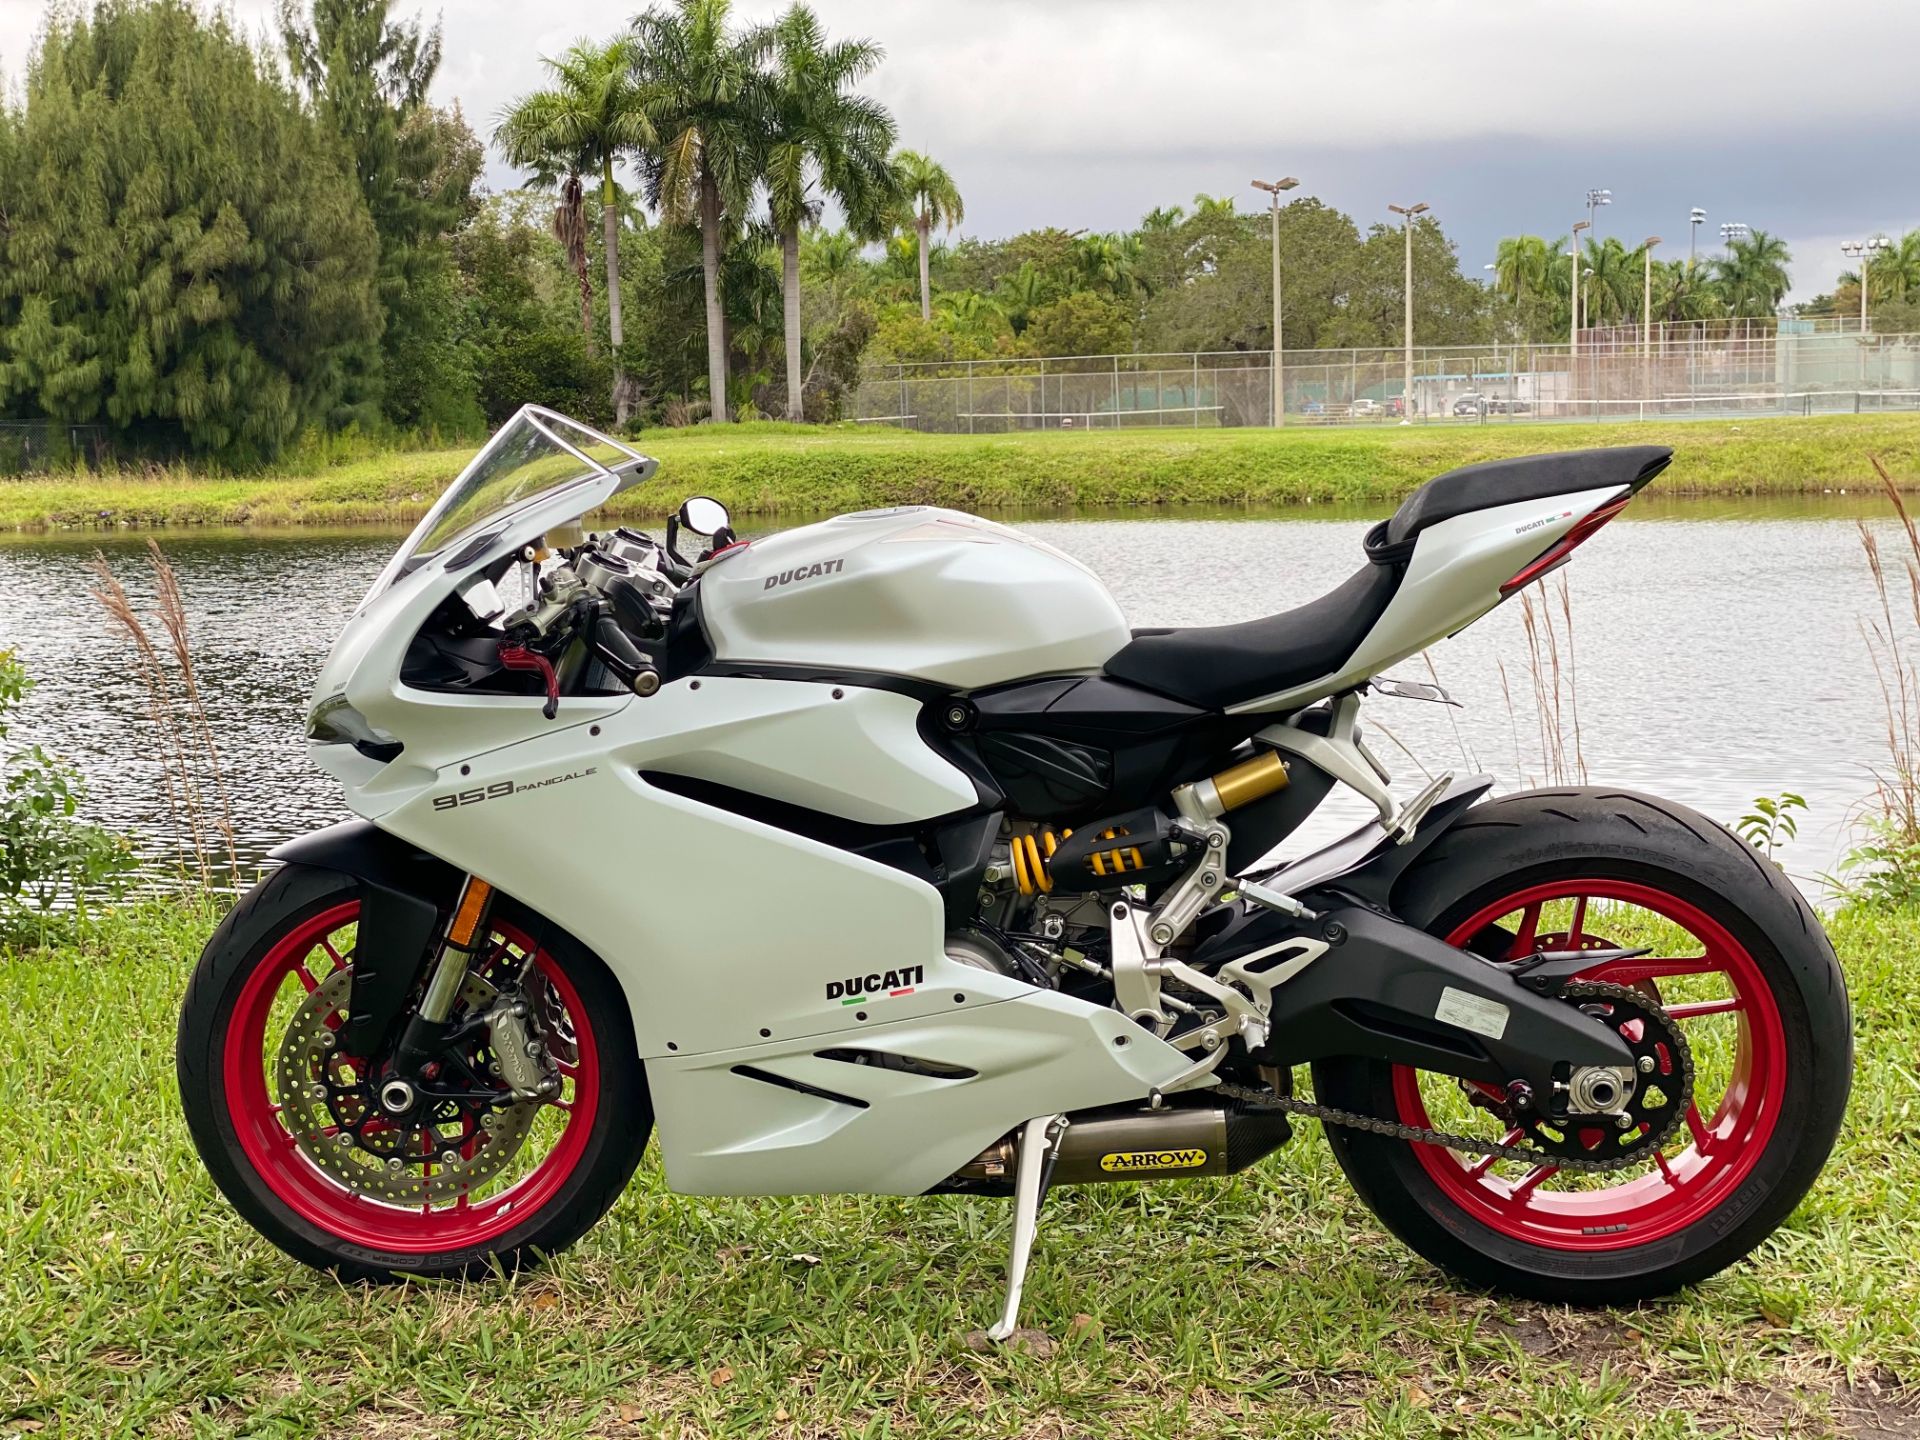 2018 Ducati 959 Panigale in North Miami Beach, Florida - Photo 19